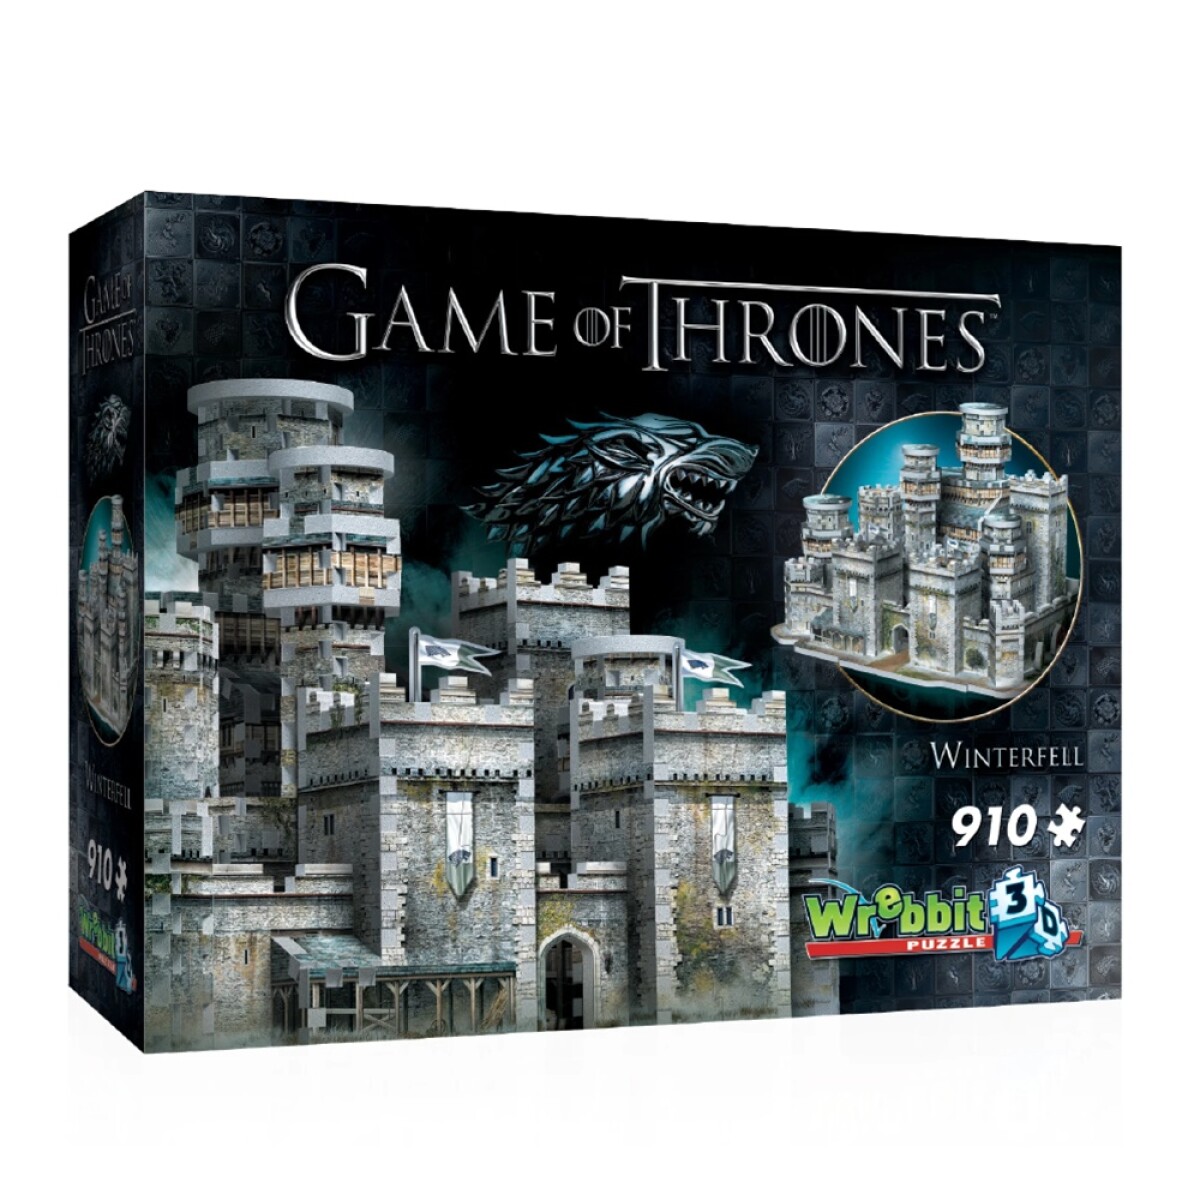 Puzzle 3D Maqueta de Game Of Thrones Winterfell 910 Piezas - Multicolor 